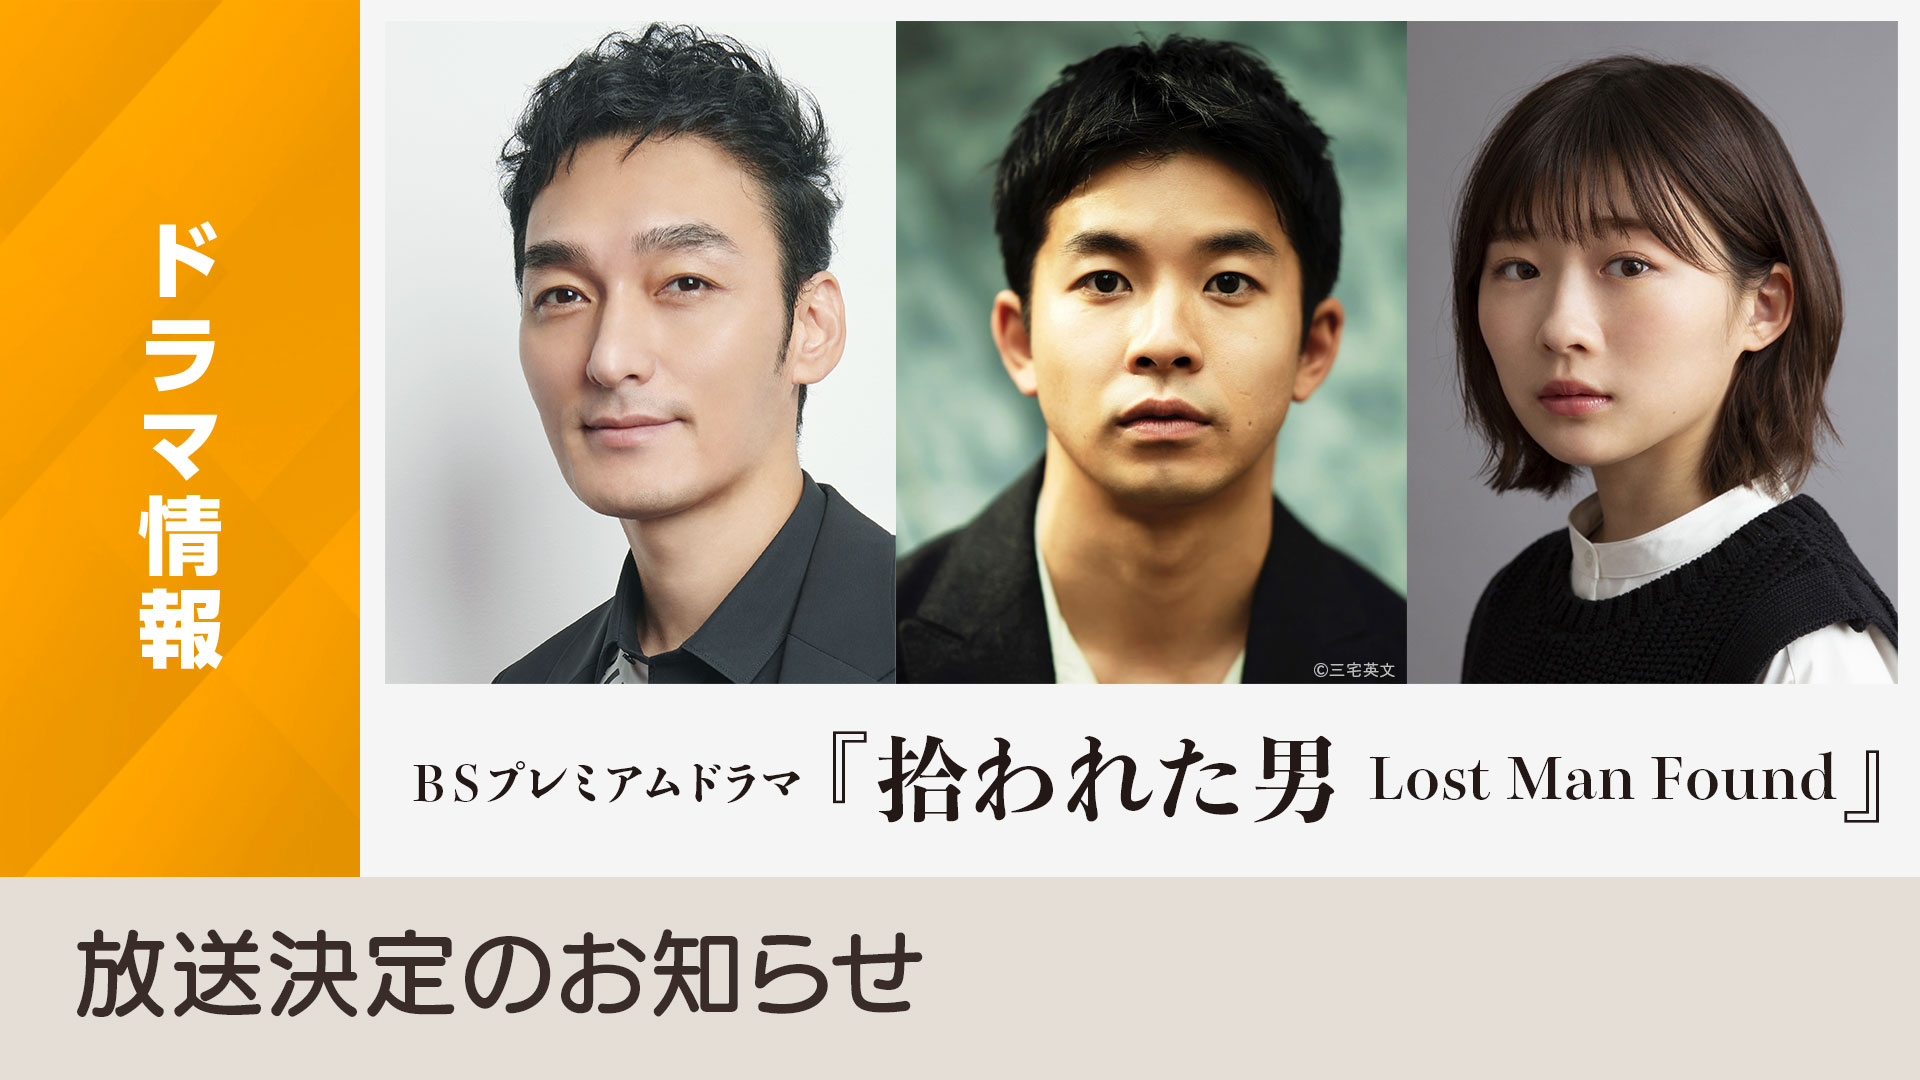 BSプレミアムドラマ「拾われた男 Lost Man Found」放送決定のお知らせ - NHK